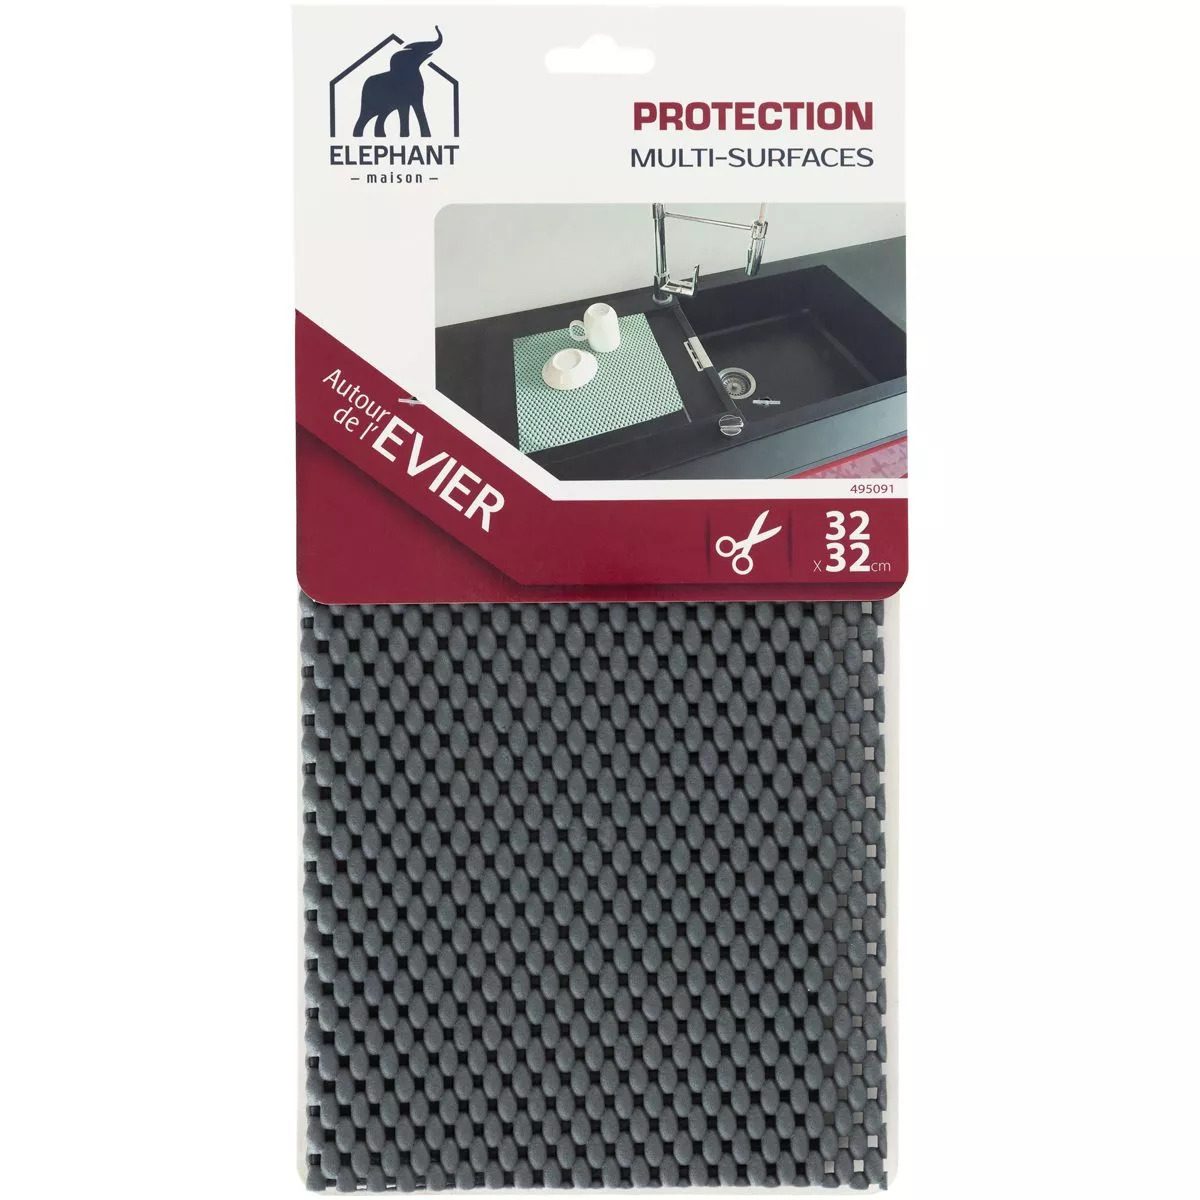 Protection multi-surfaces Eléphant Maison